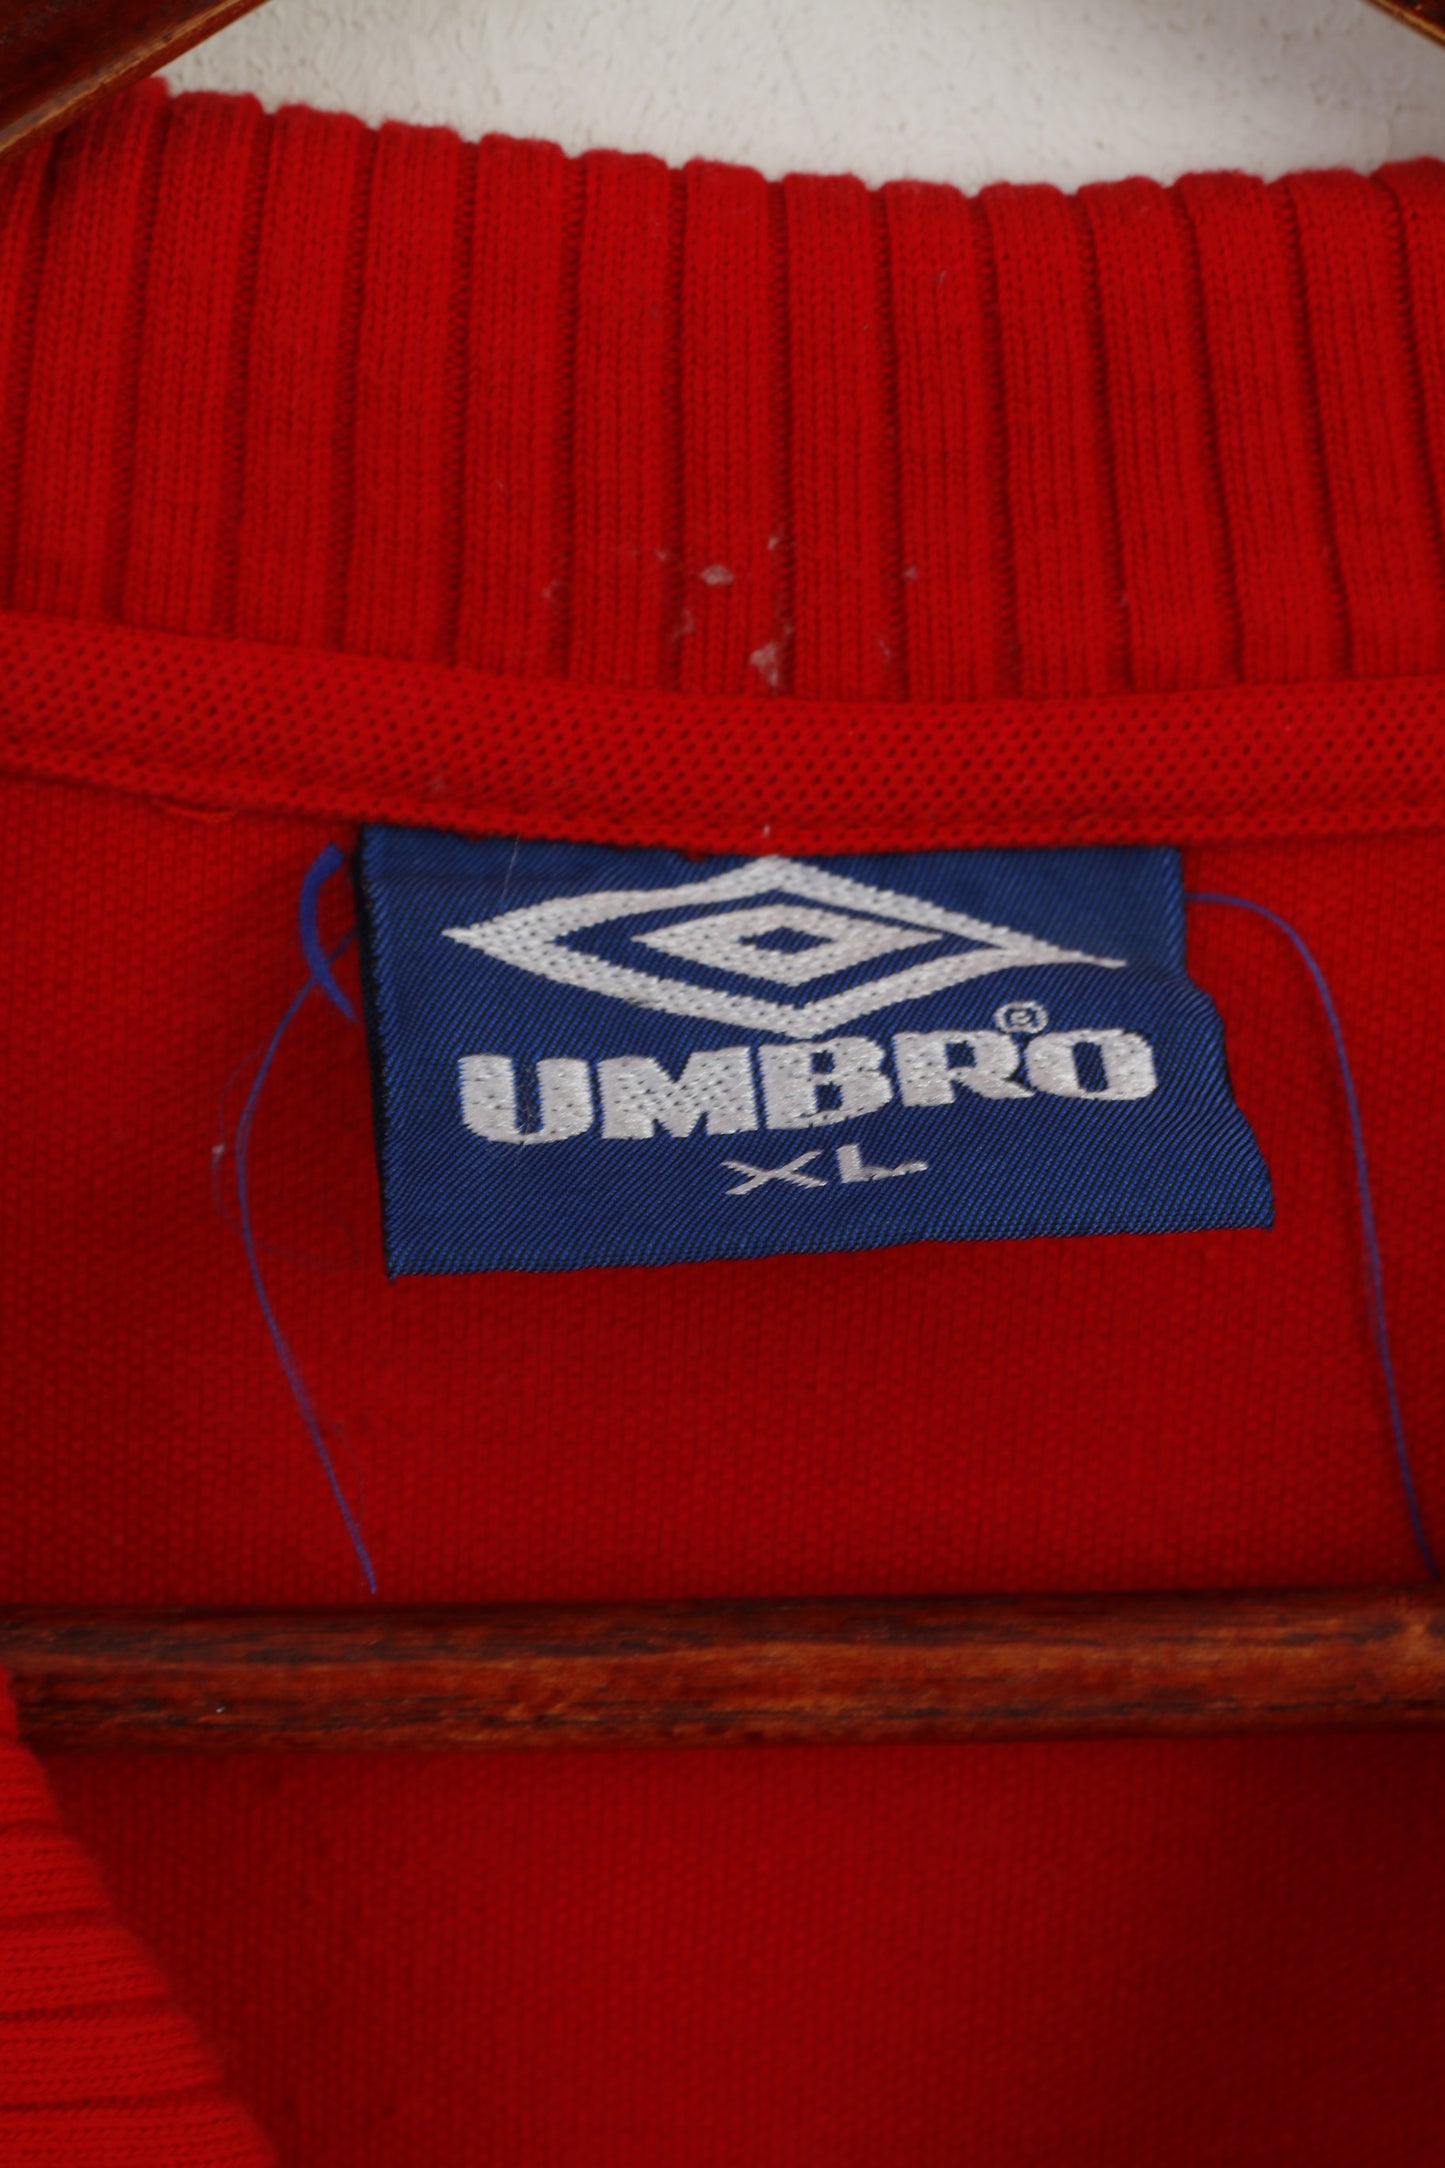 Umbro Homme XL (L) Polo Rouge Coton Pro Training Manches Courtes Haut Classique